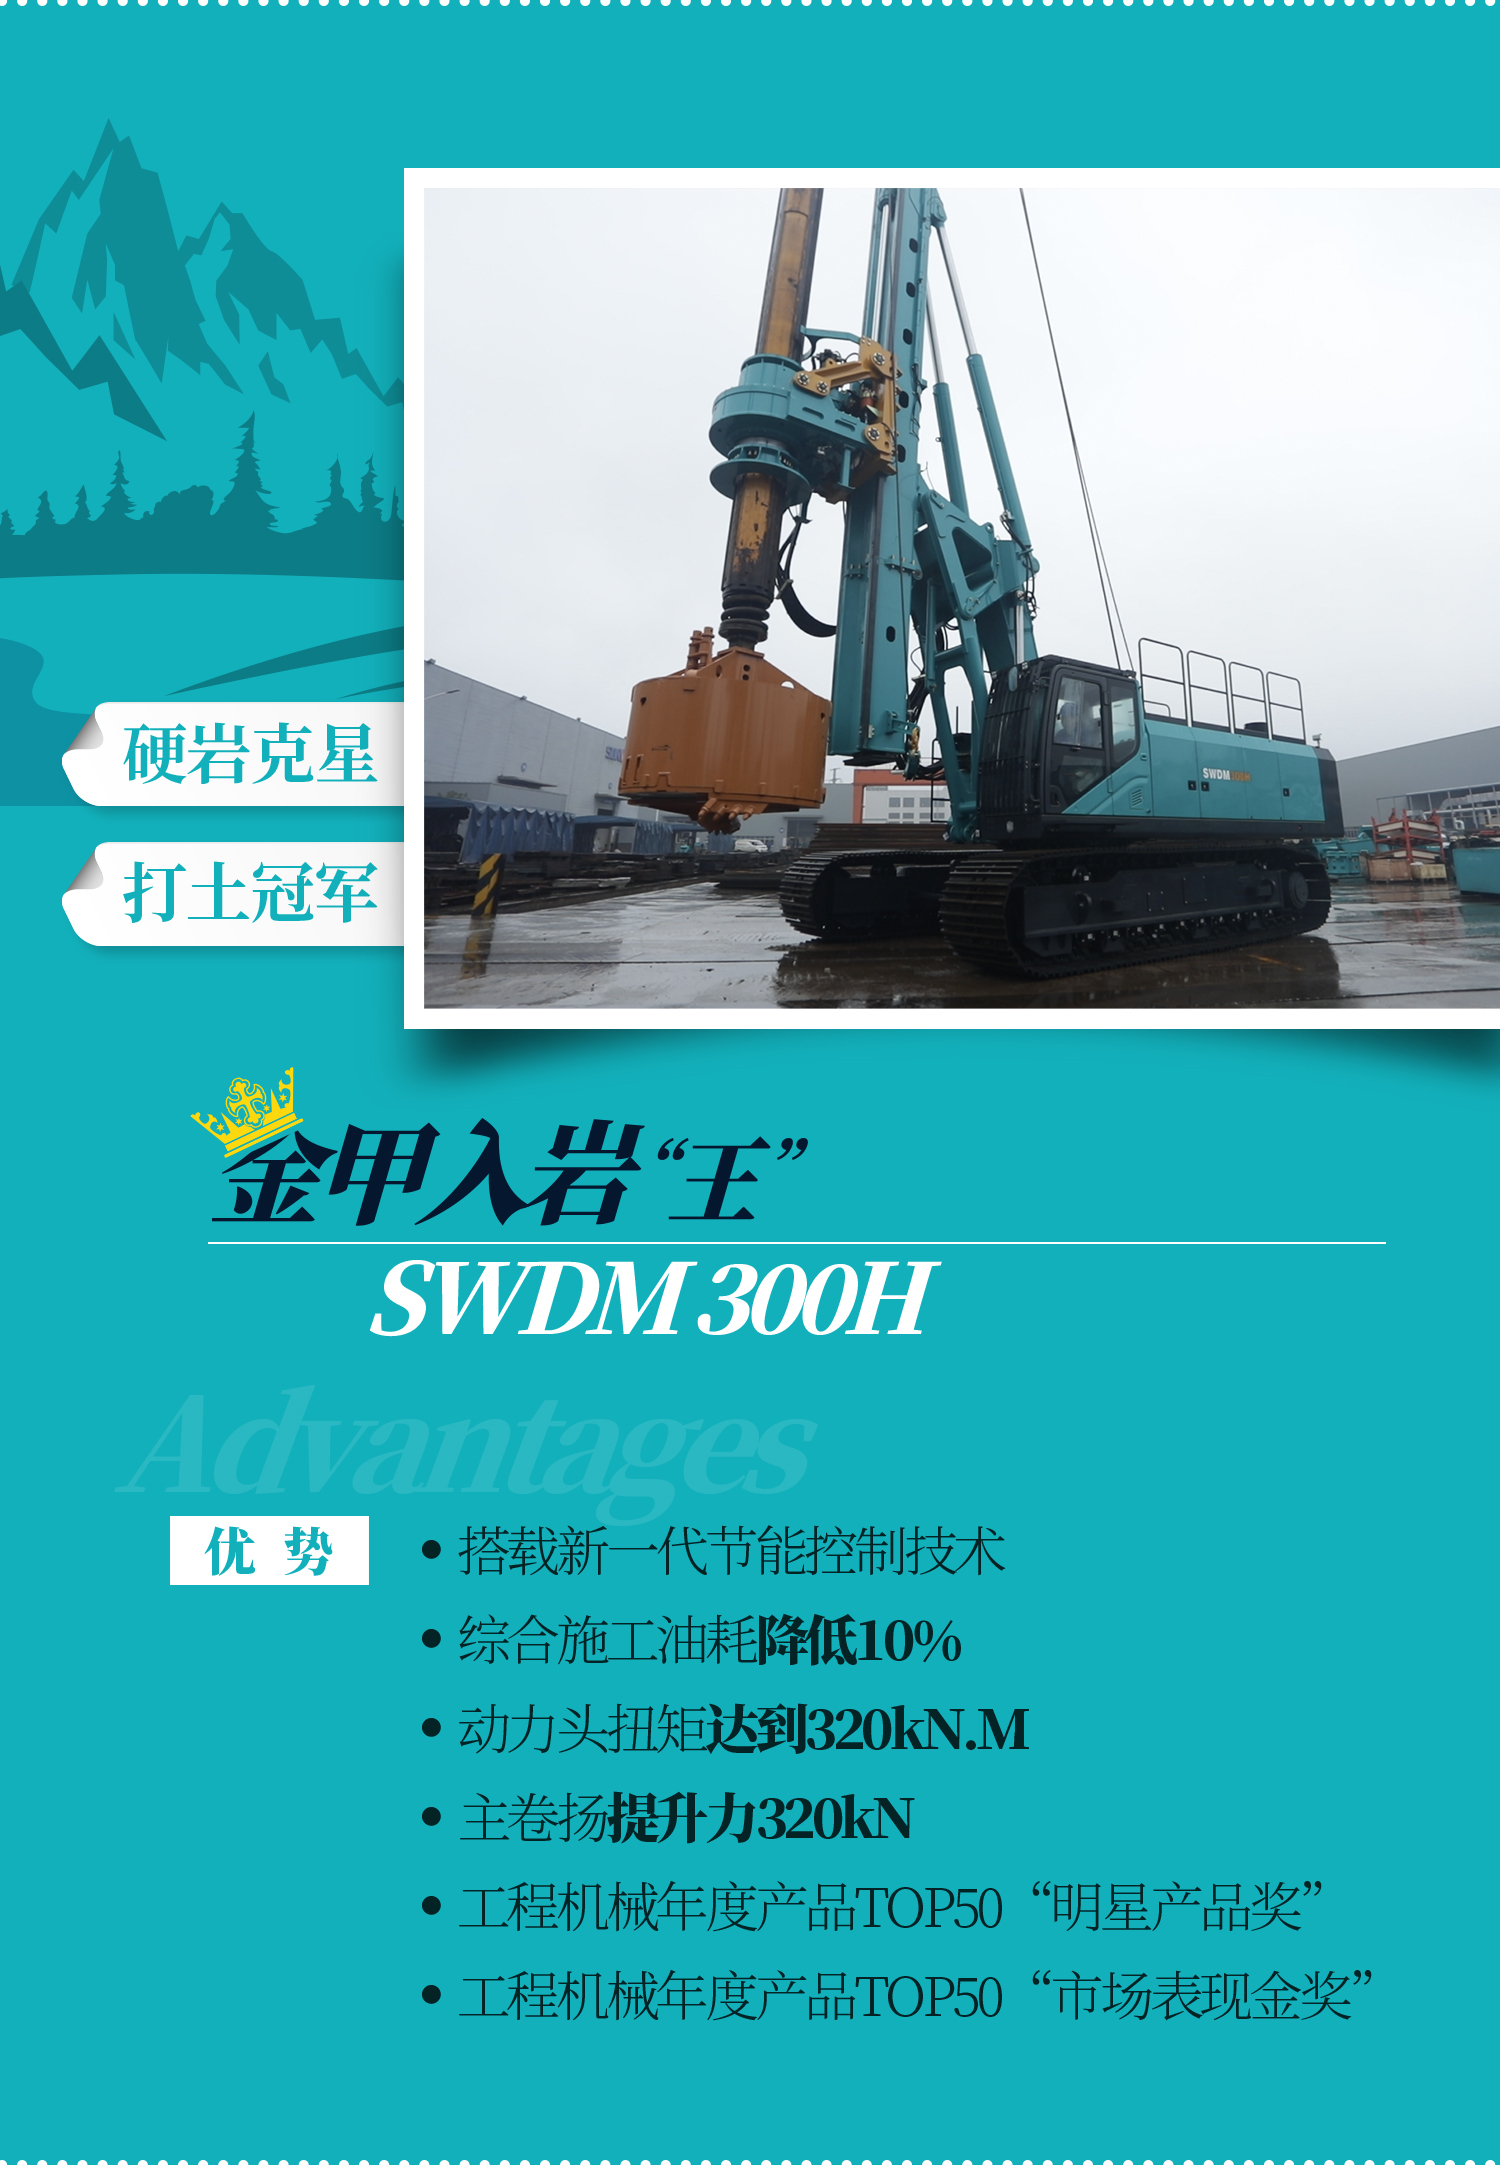 SWDM300H 大型多功能旋挖钻机